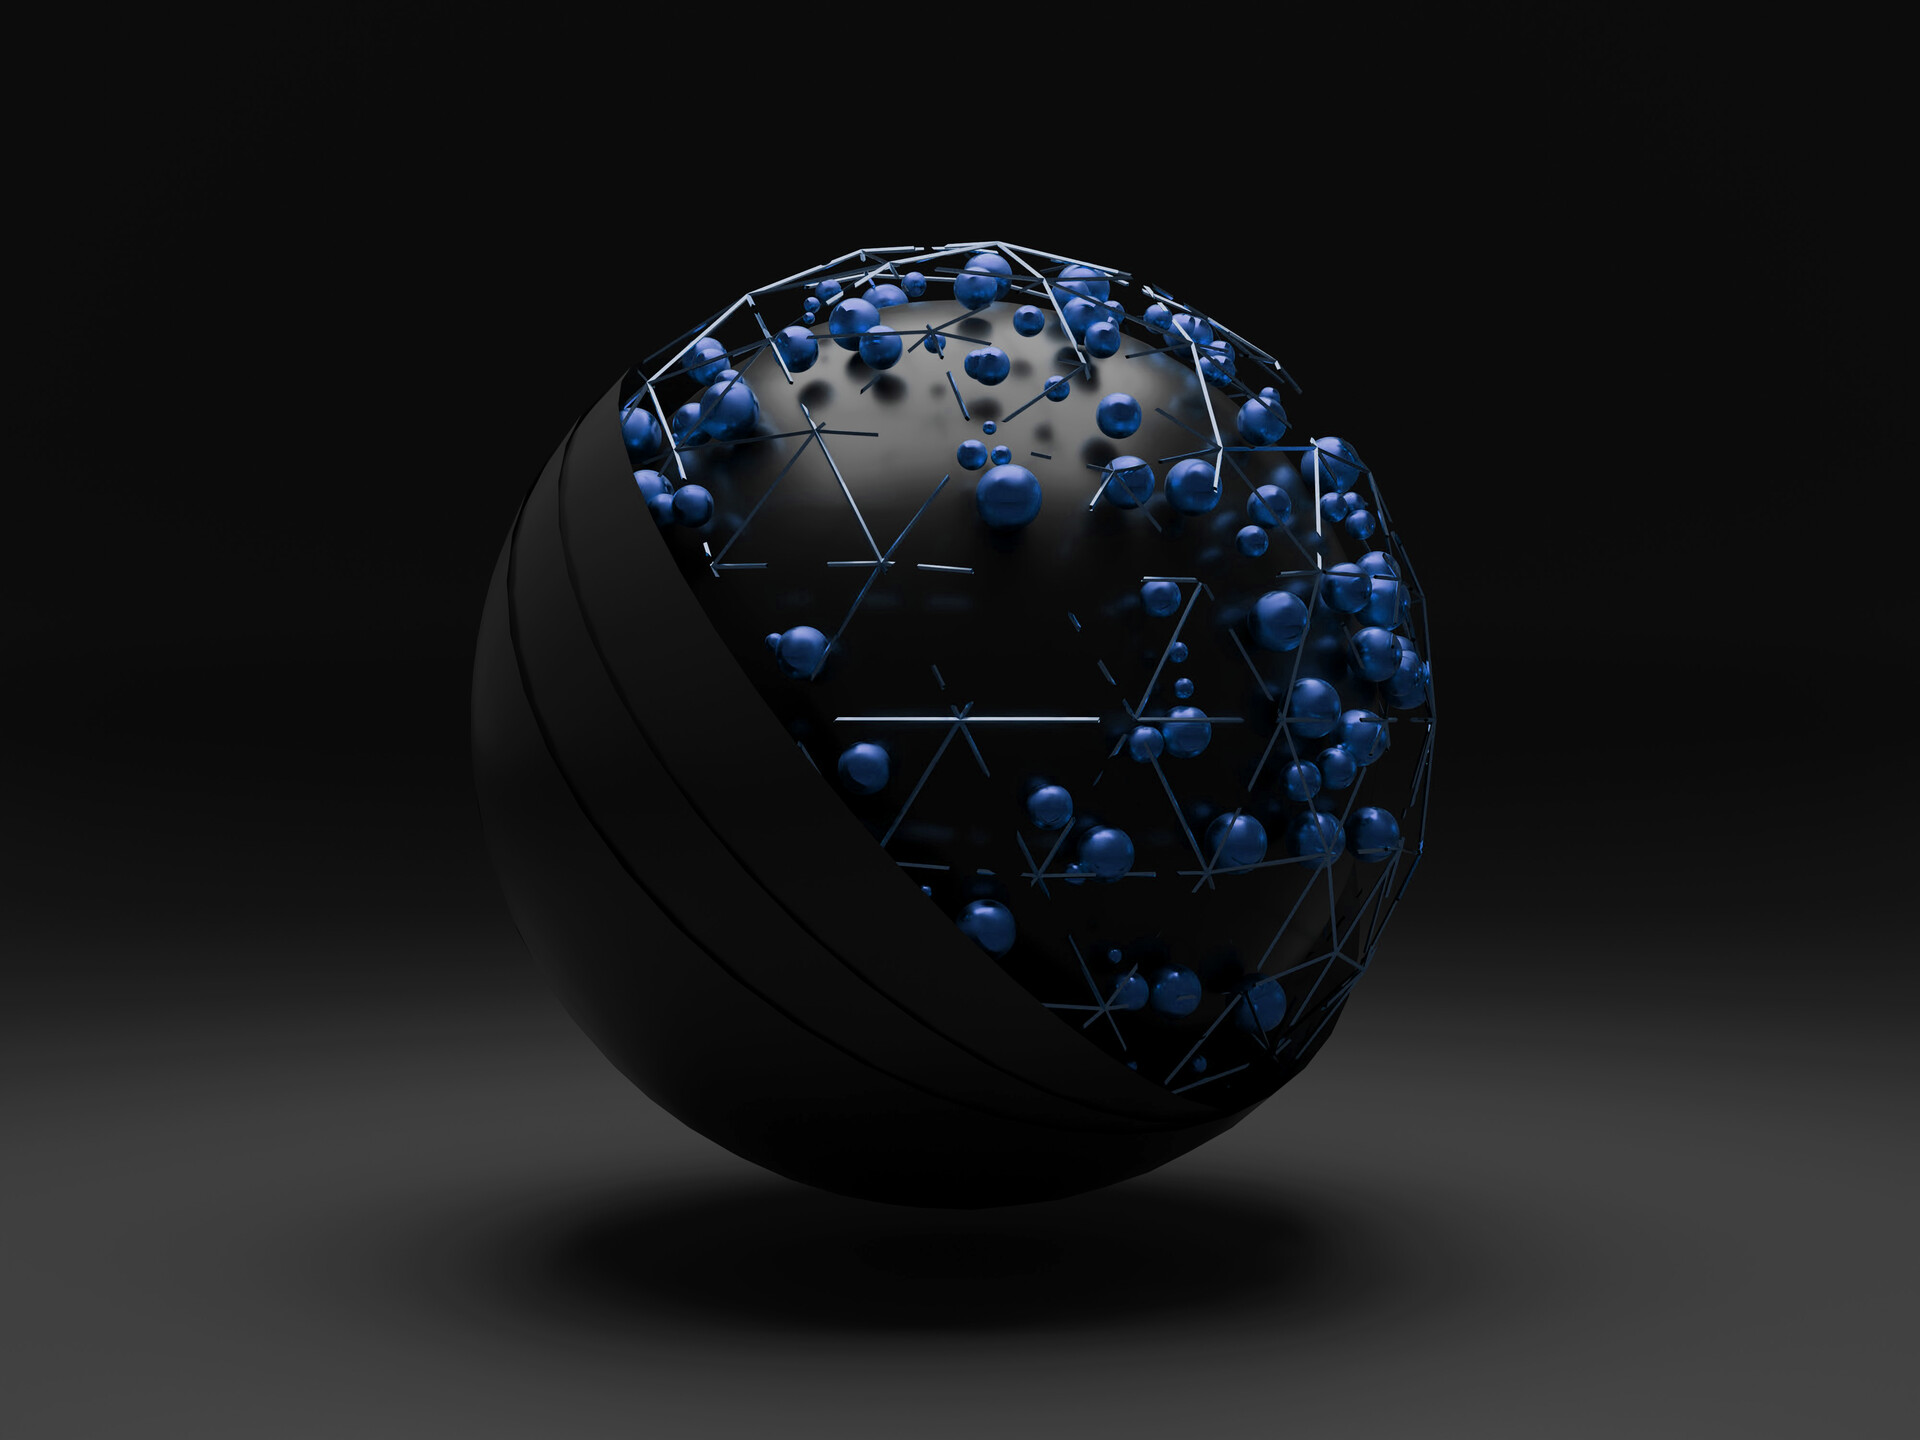 ArtStation - 3D metal balls hovering over a black sphere.